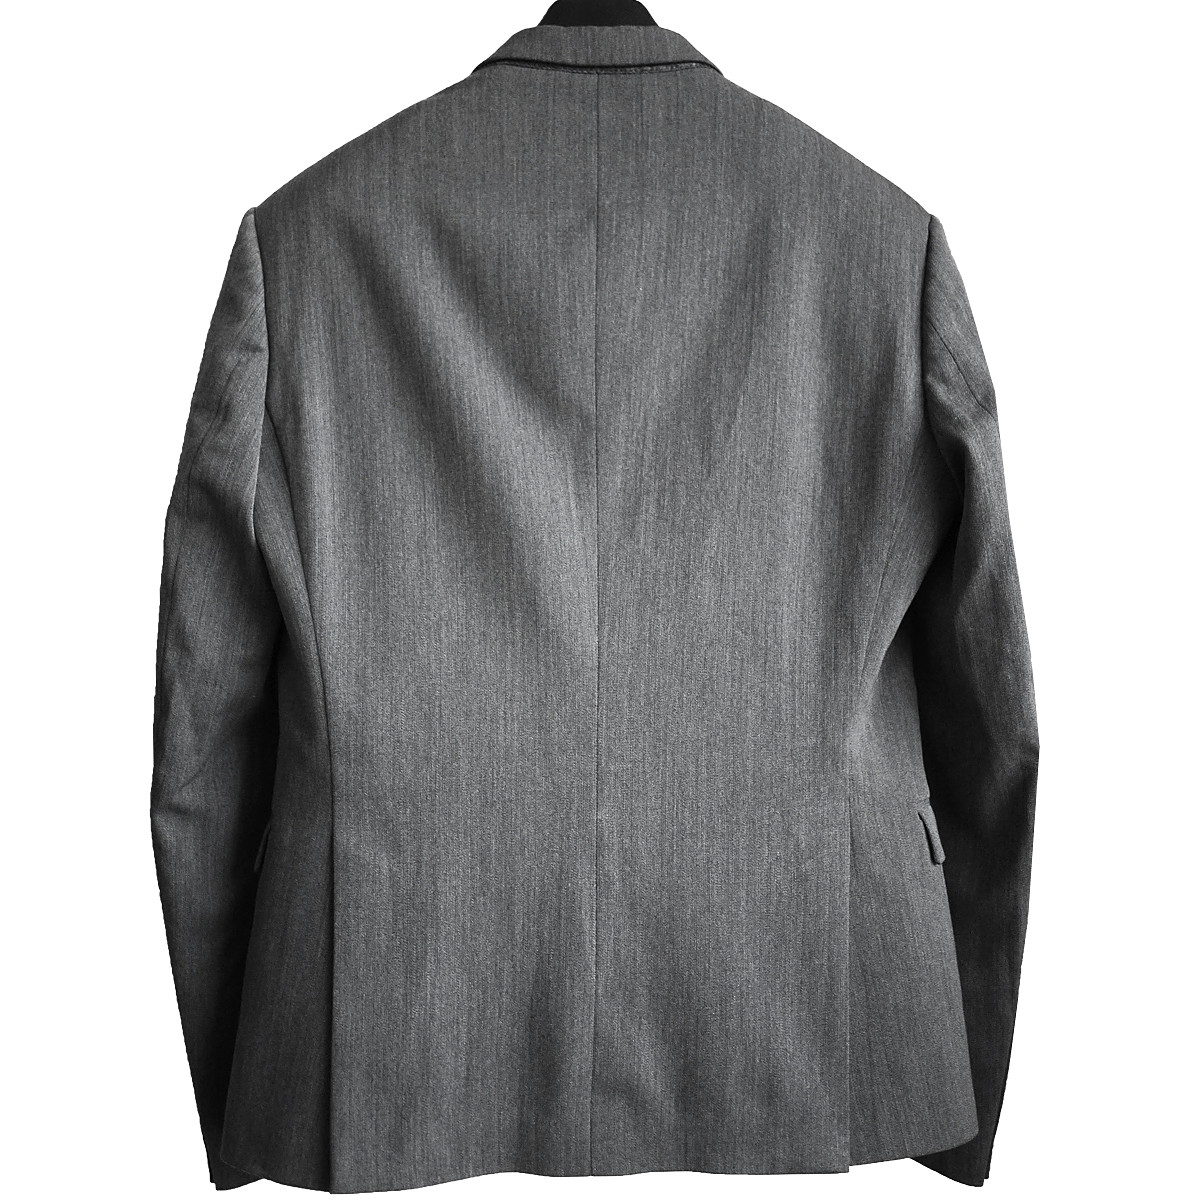 正規品 フラッグシップモデル ニールバレット NeIL BarreTT ウールギャバジン セットアップスーツ パンツ スラックス ジャケットの画像2